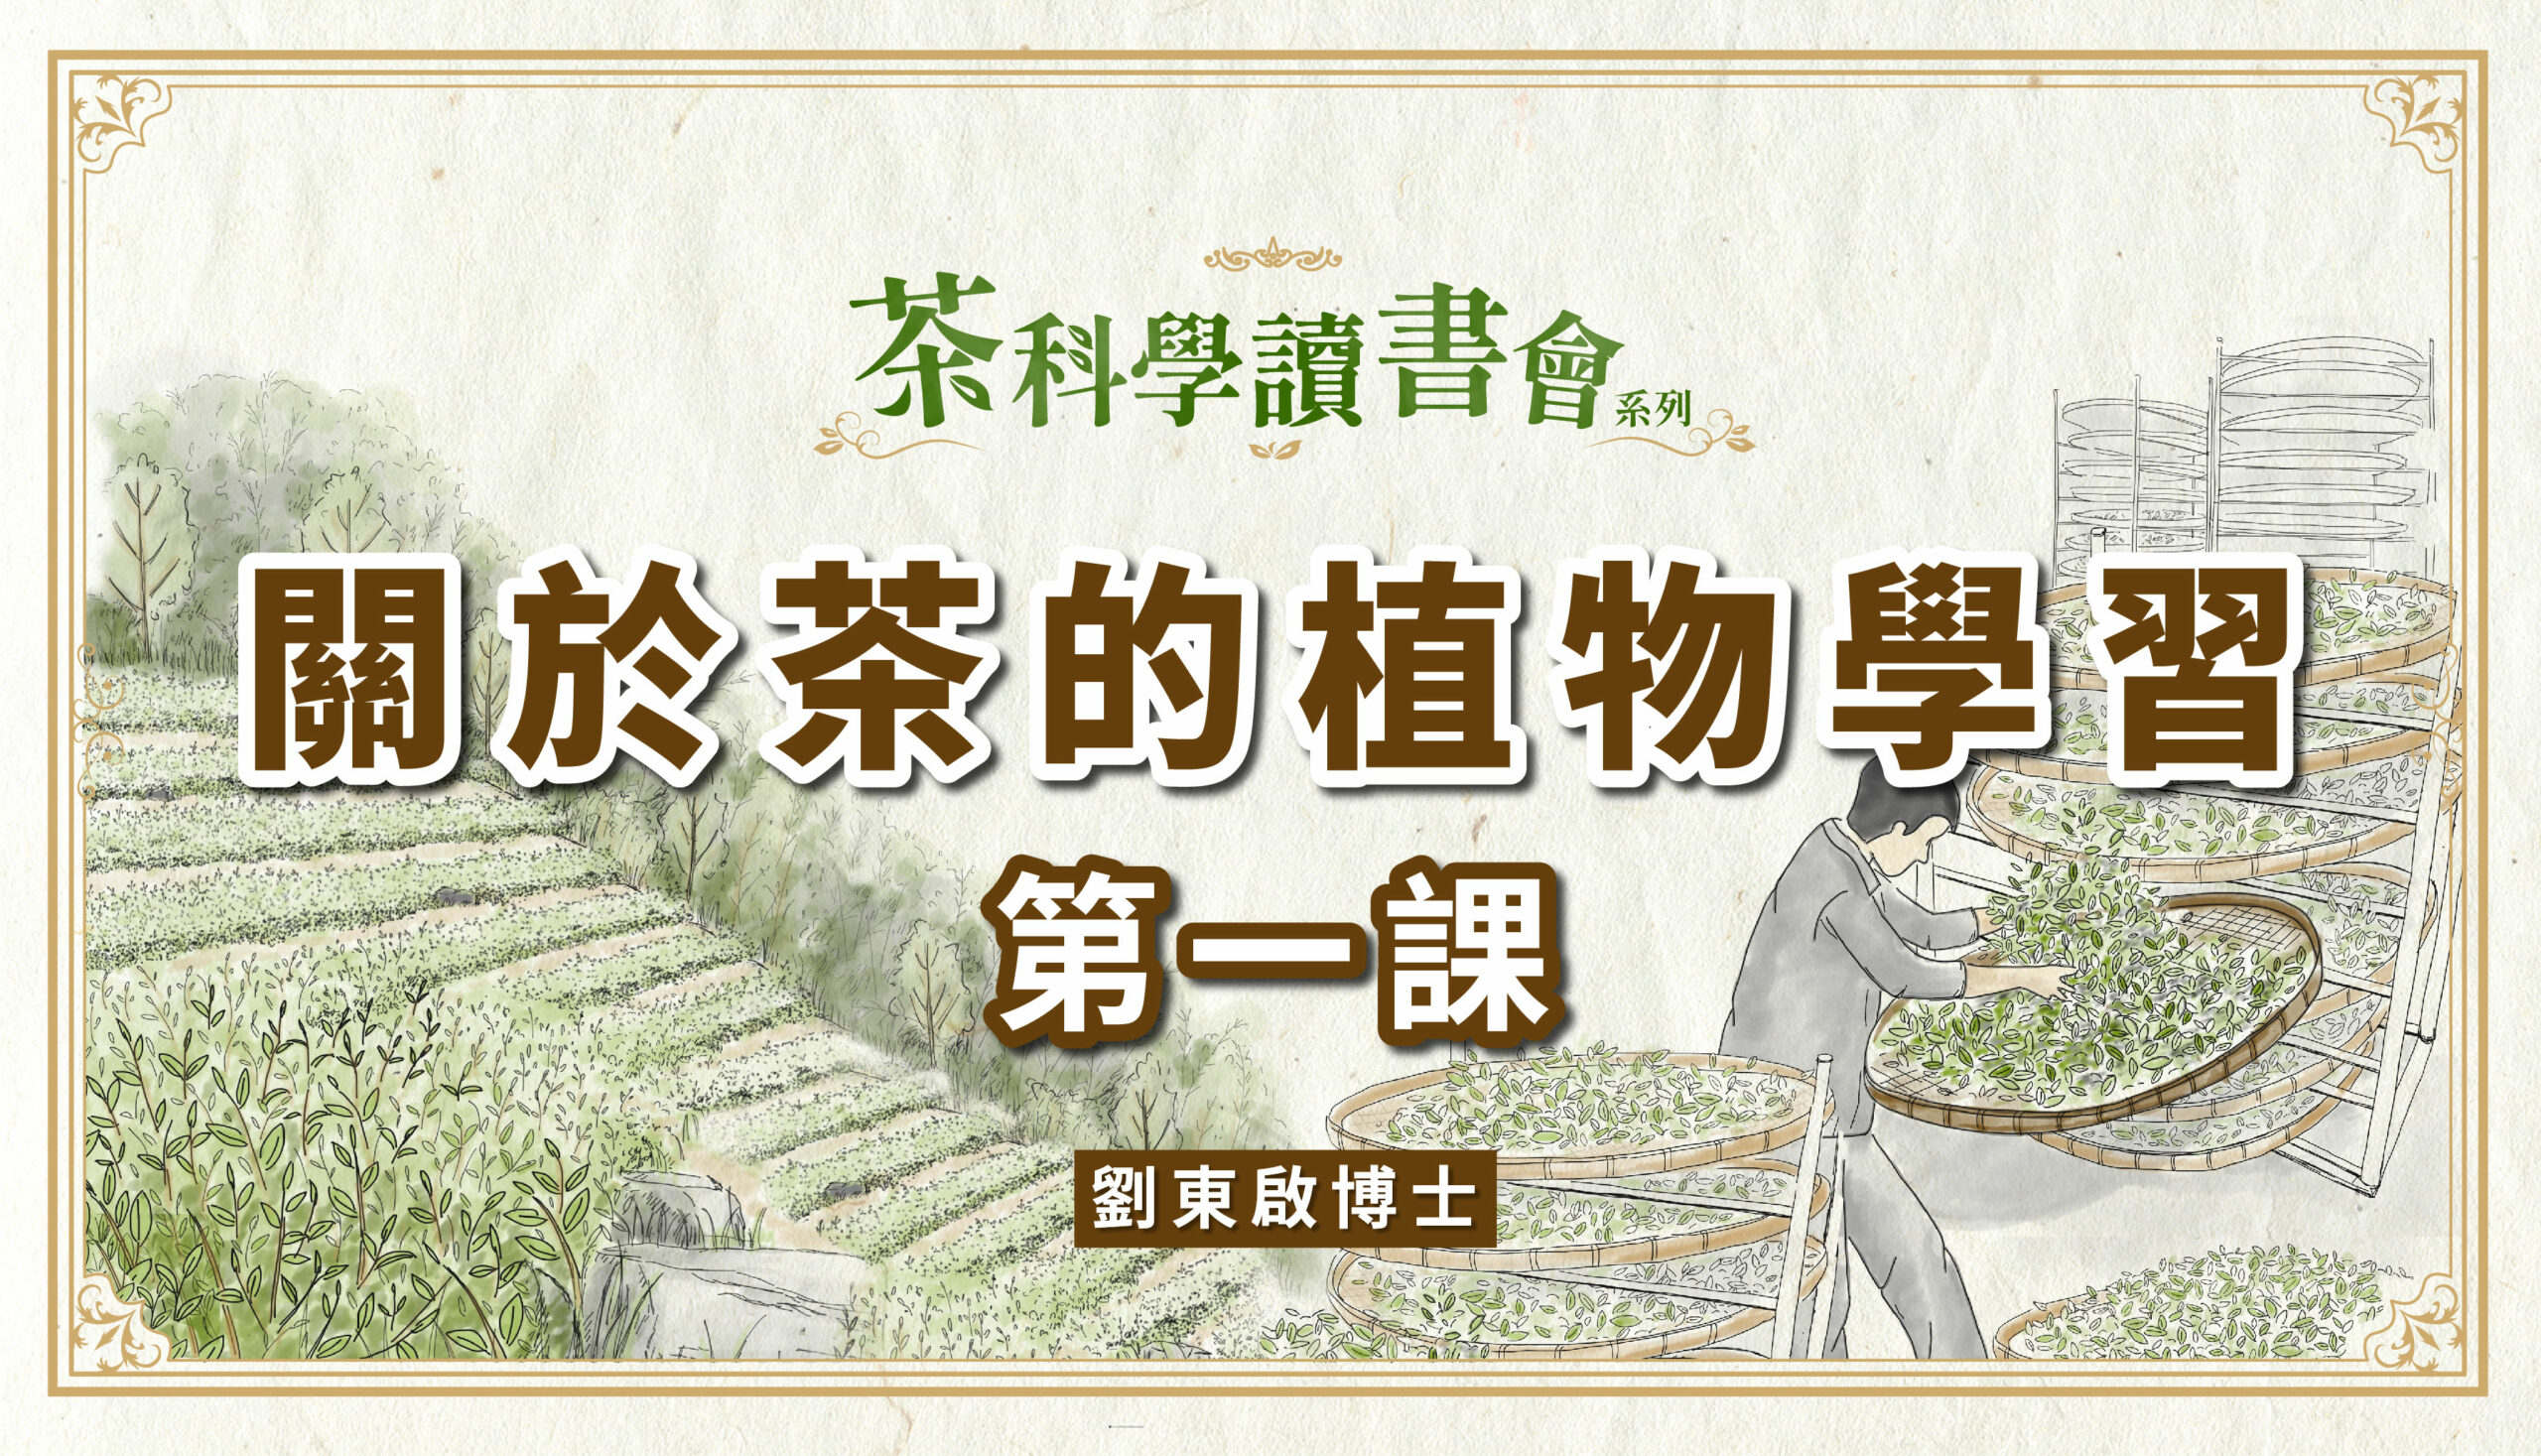 [茶科學讀書會] – 關於茶的植物學習 第一課 – 劉東啟老師 – “線上課程”